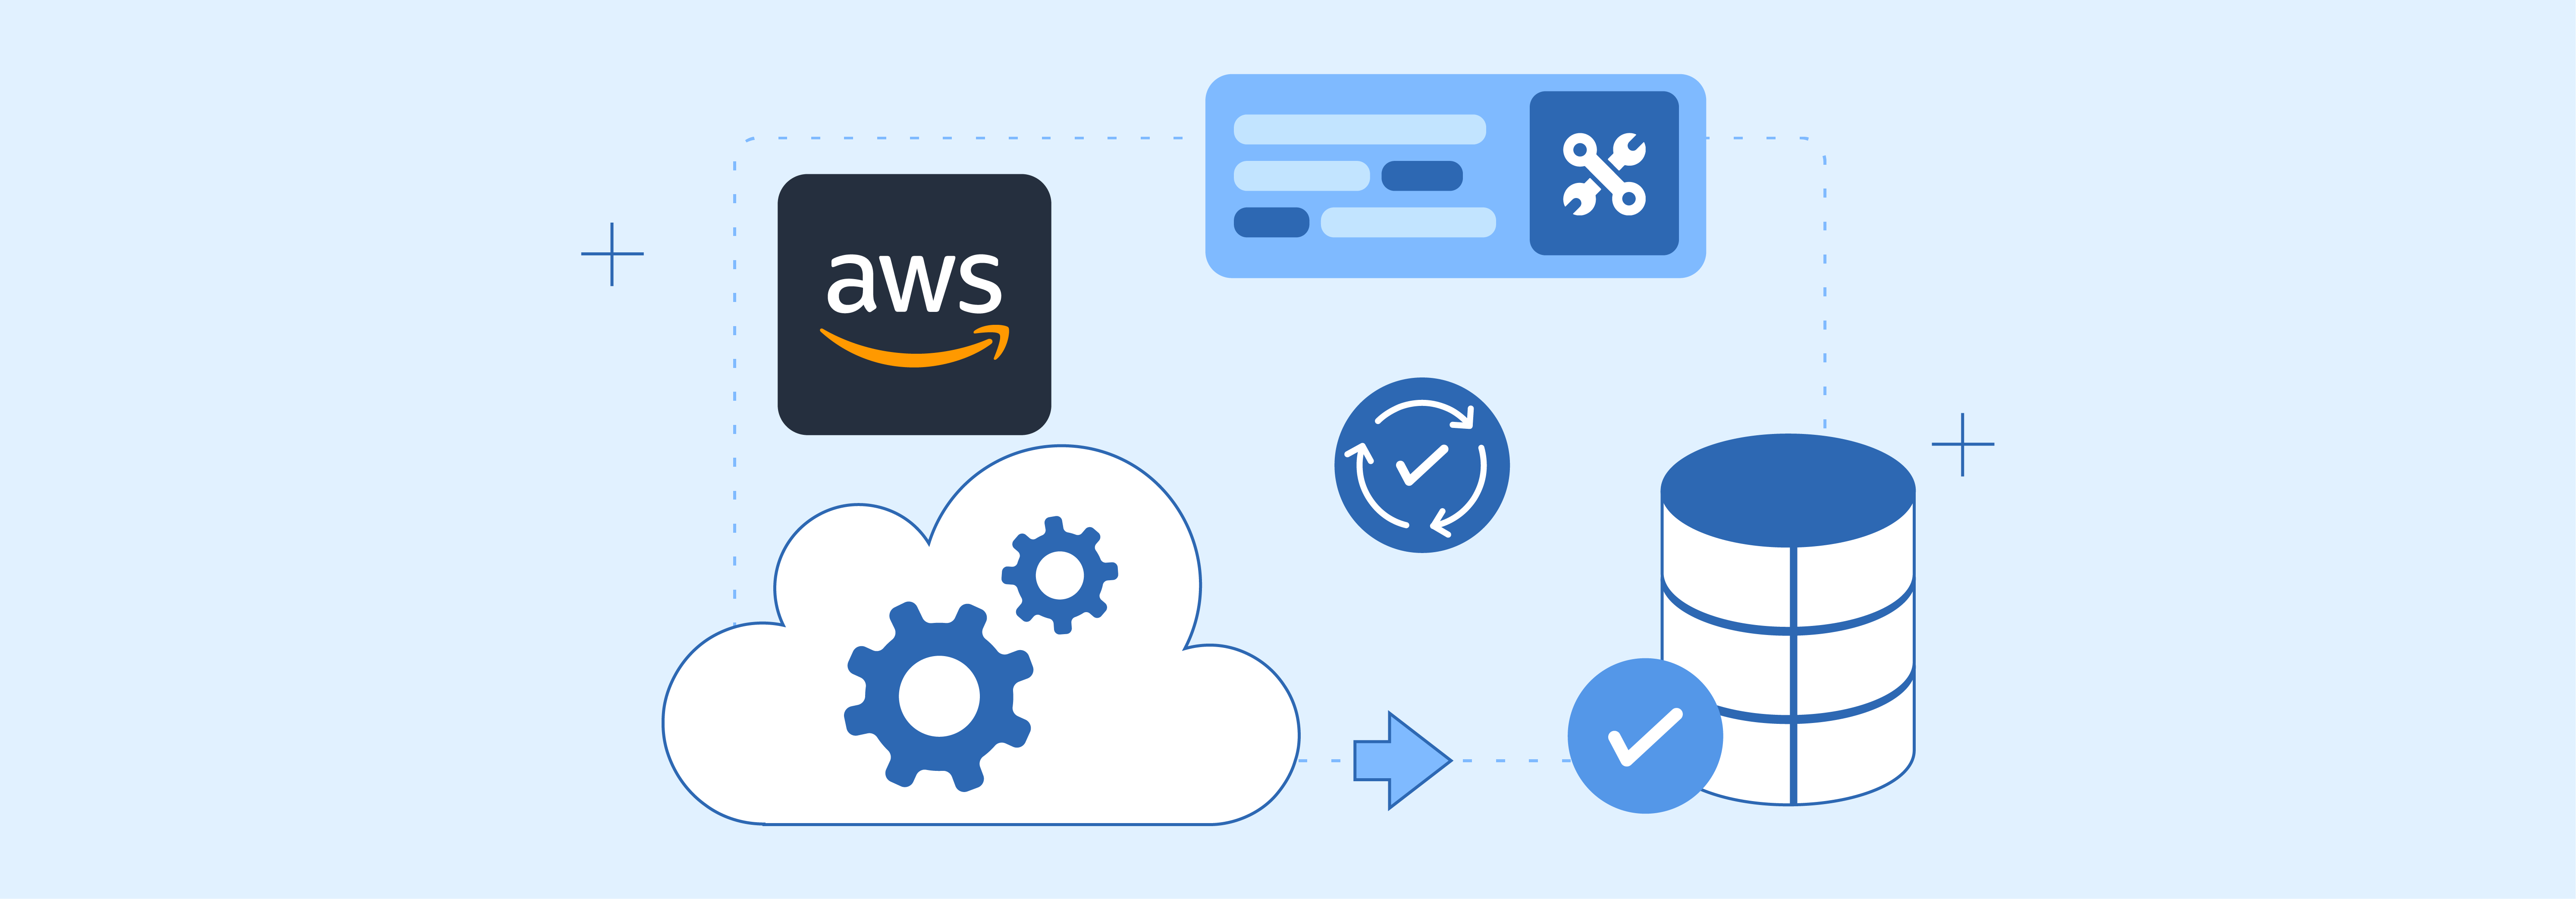 Understanding AWS Cloud Service